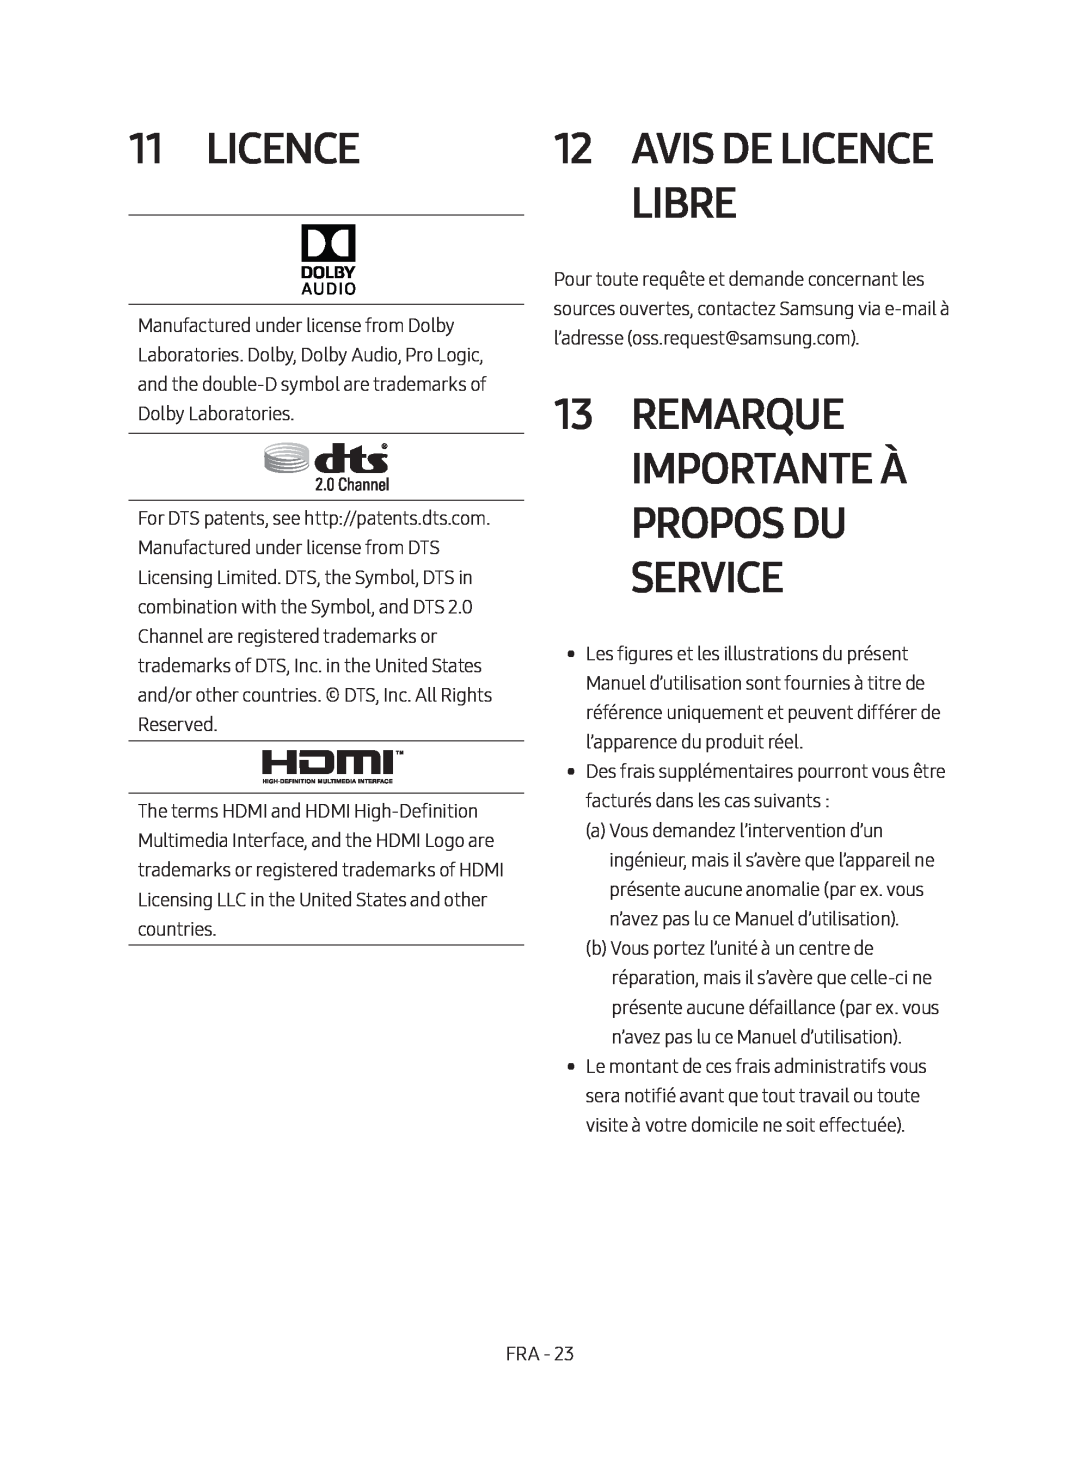 Samsung HW-M450/ZG, HW-M450/EN, HW-M450/ZF manual Remarque Importante À Propos Du Service, Avis De Licence Libre 